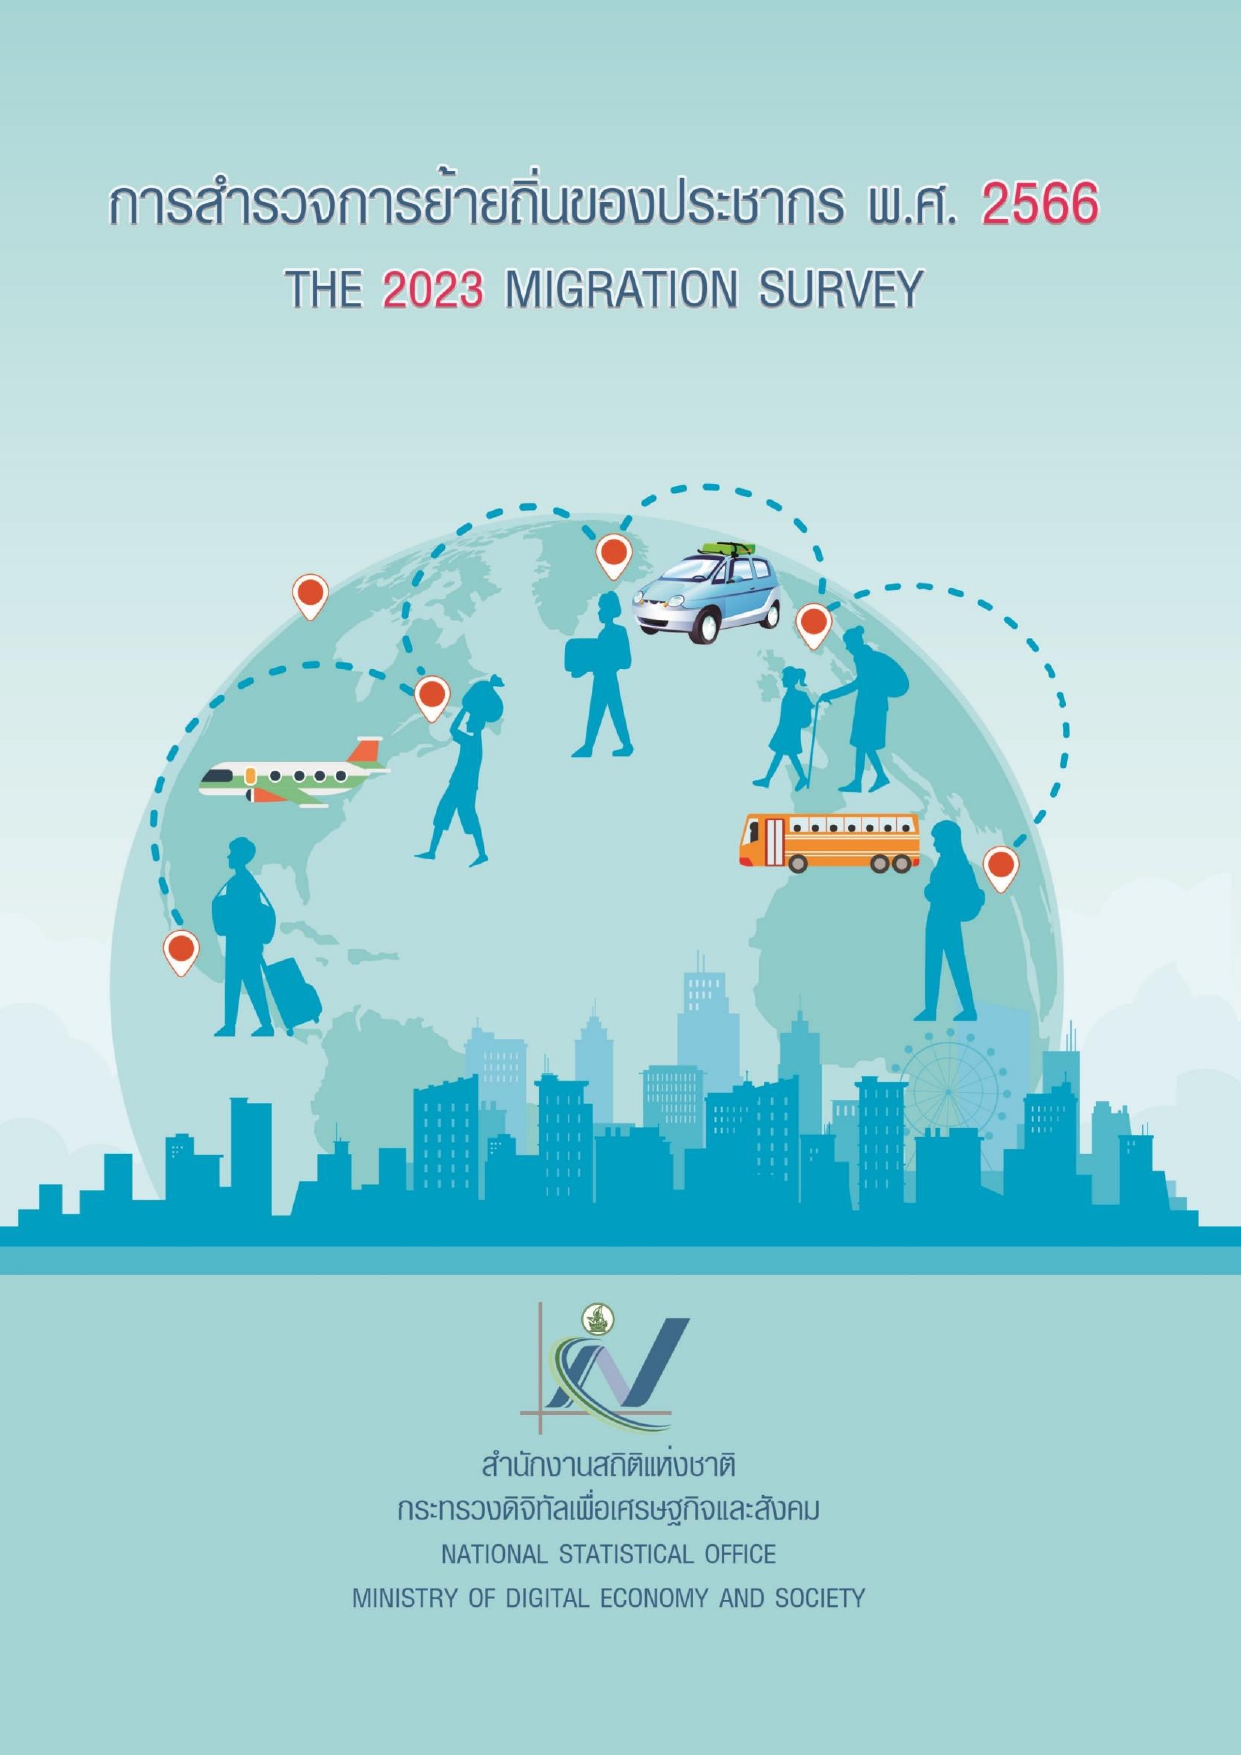 The Migration Survey